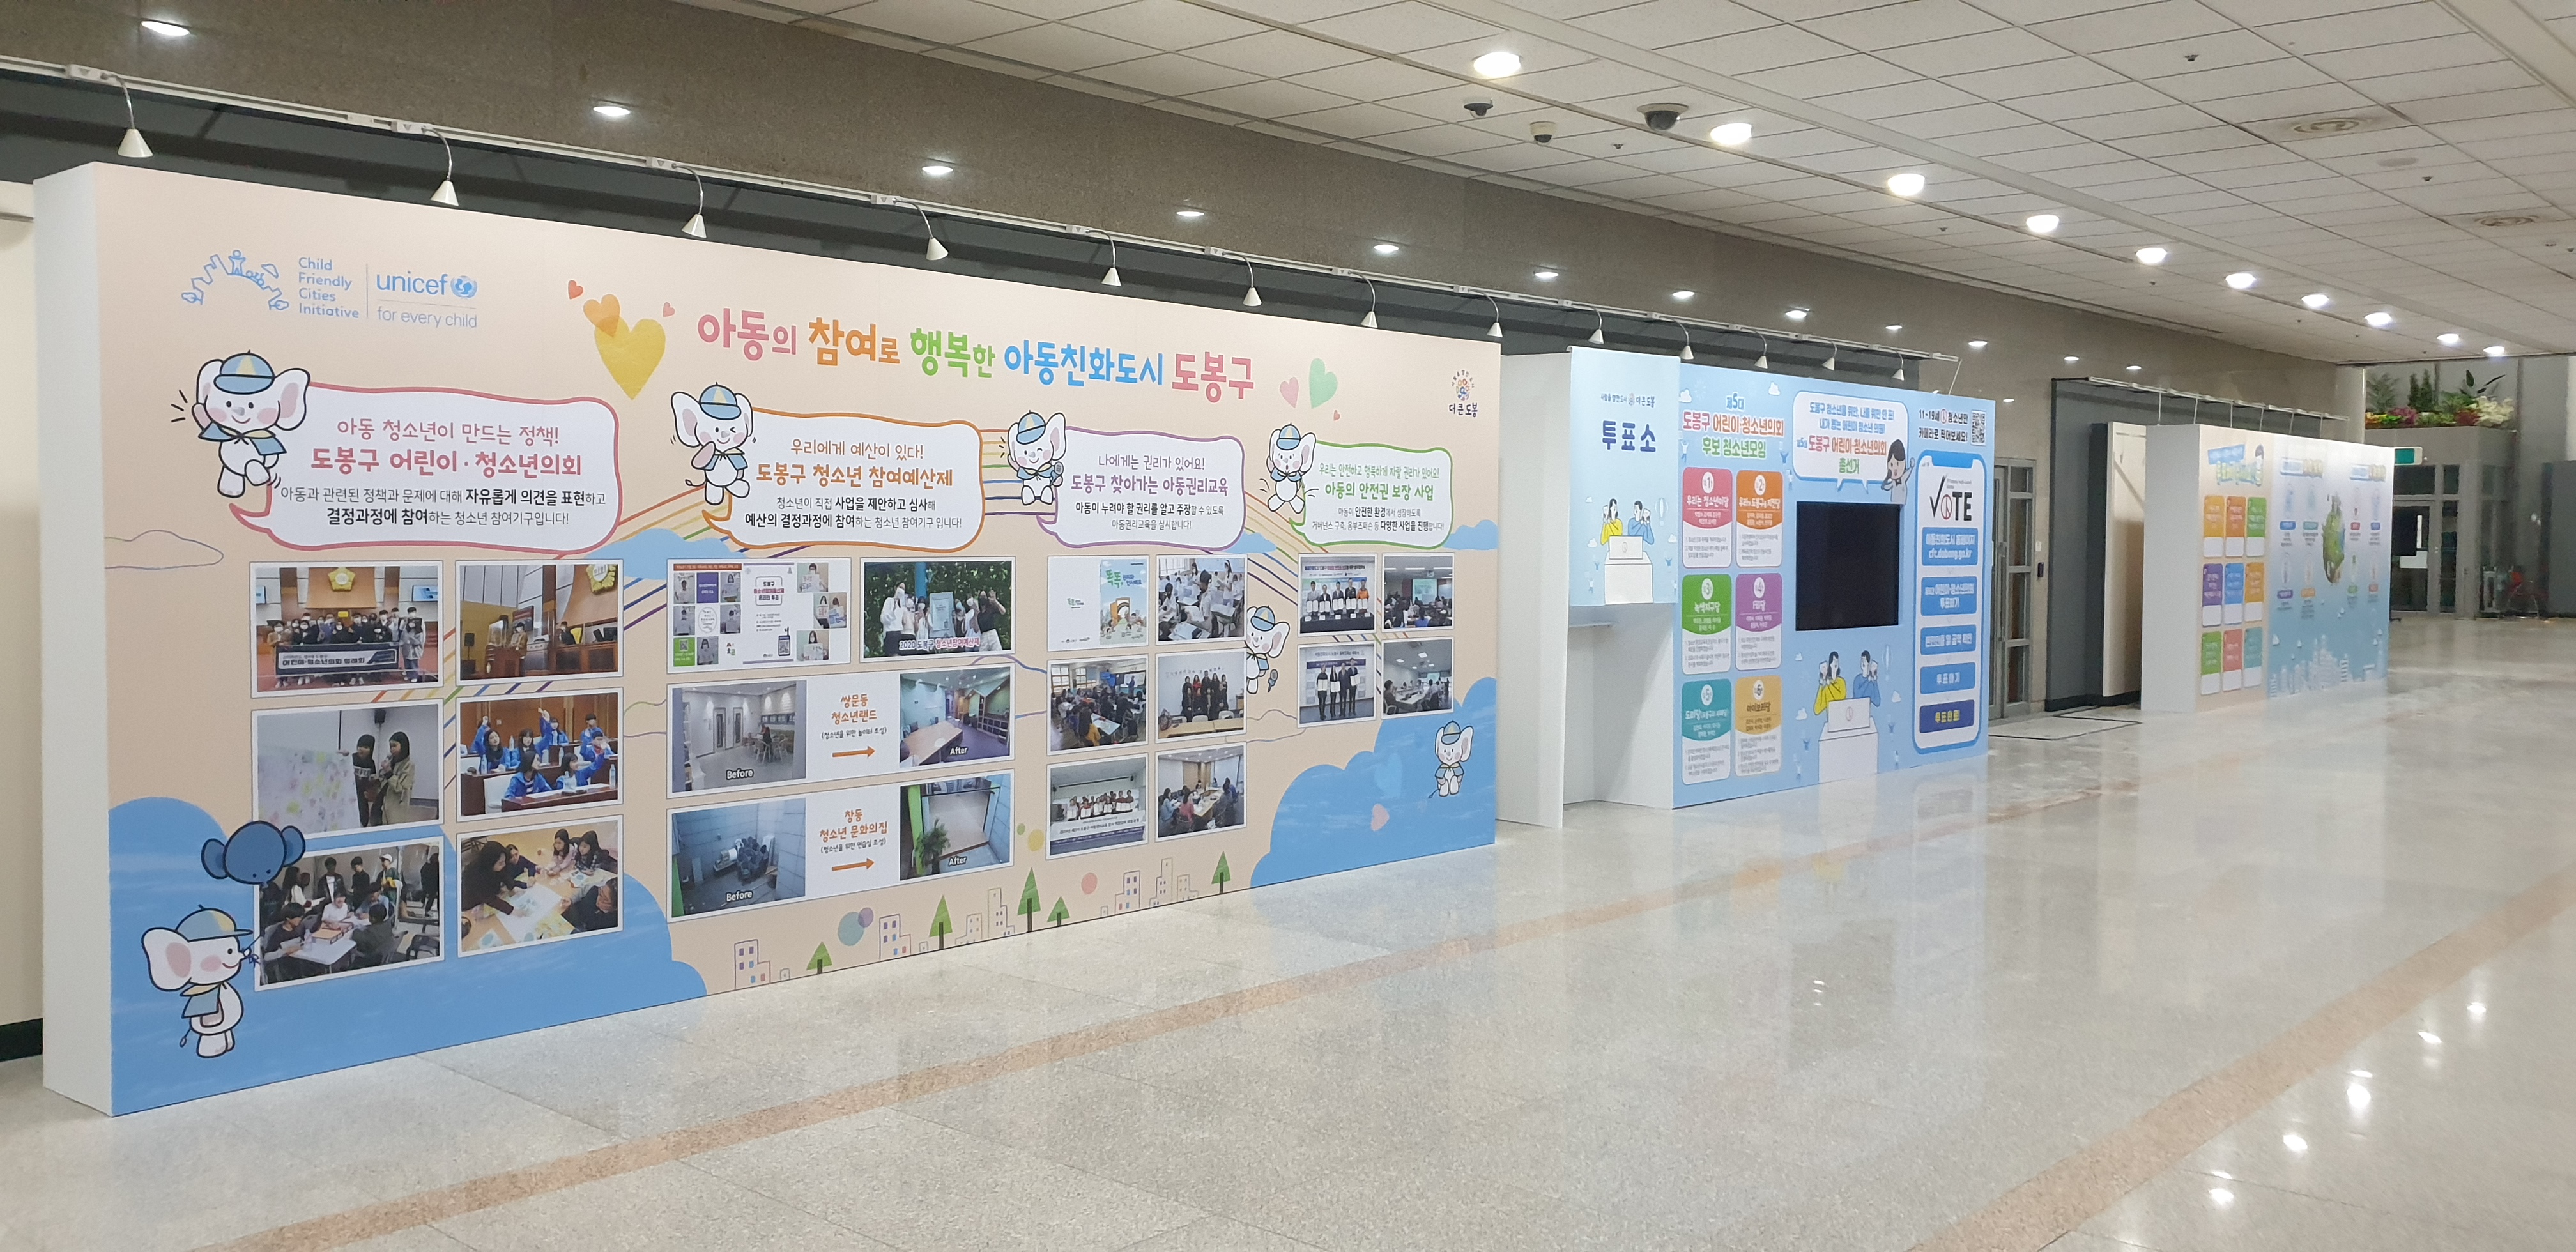 2020년 제4회 아동권리주간 행사(아동친화도시 도봉구 전시회) 개최 